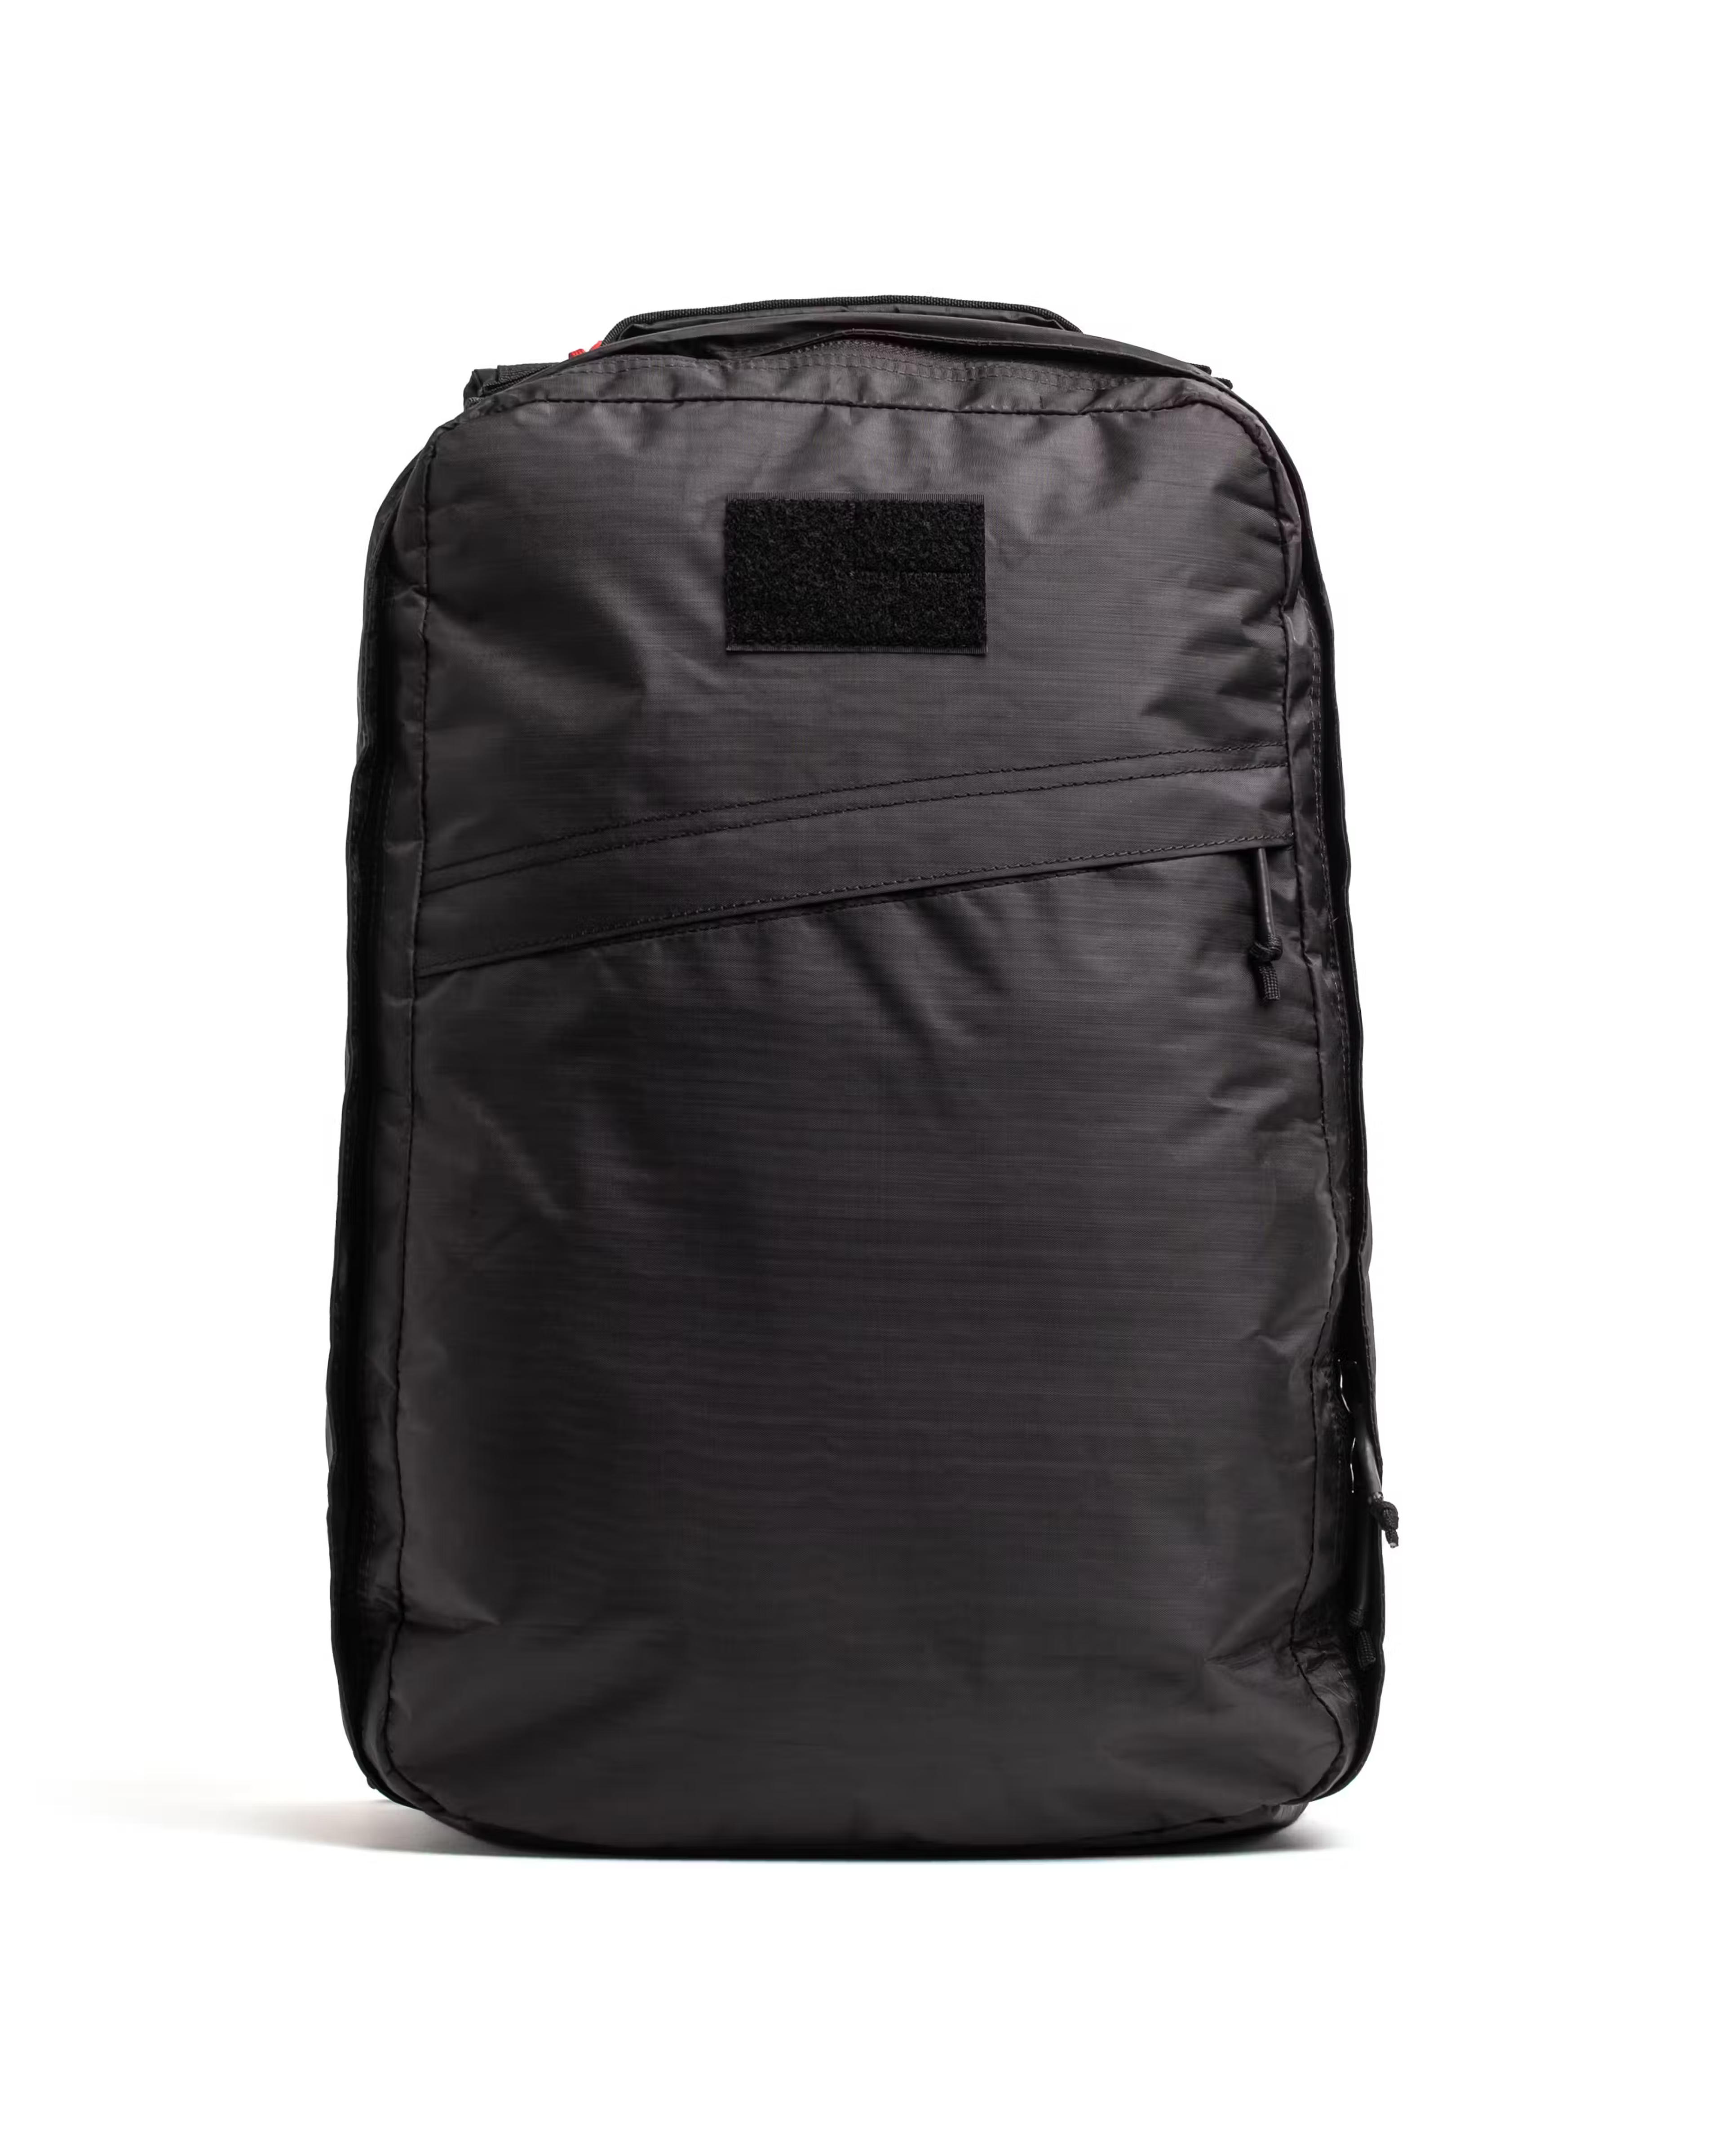 GORUCK GR1 Dyneema Backpack - 21L - Black Dyneema | Backpacks | Huckberry